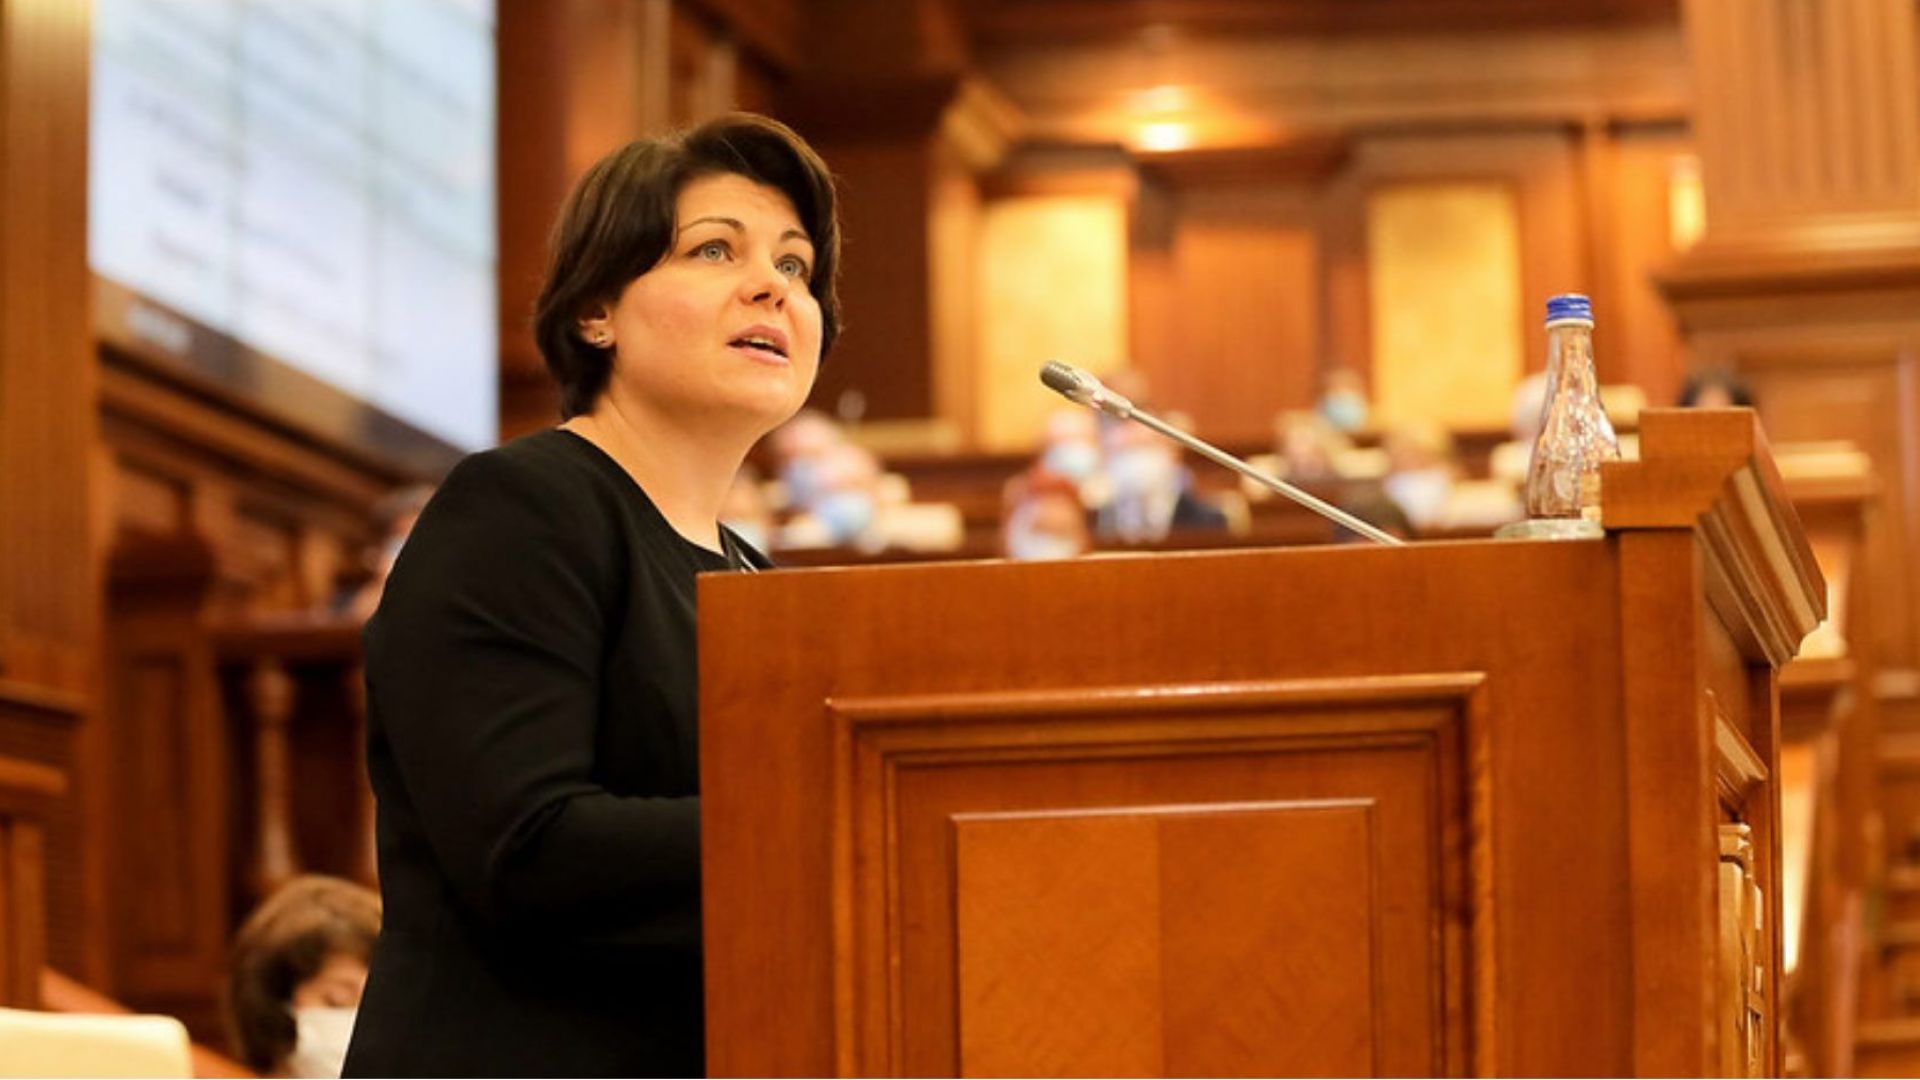 Парламентът на Молдова утвърди Наталия Гаврилица за нов премиер на страната